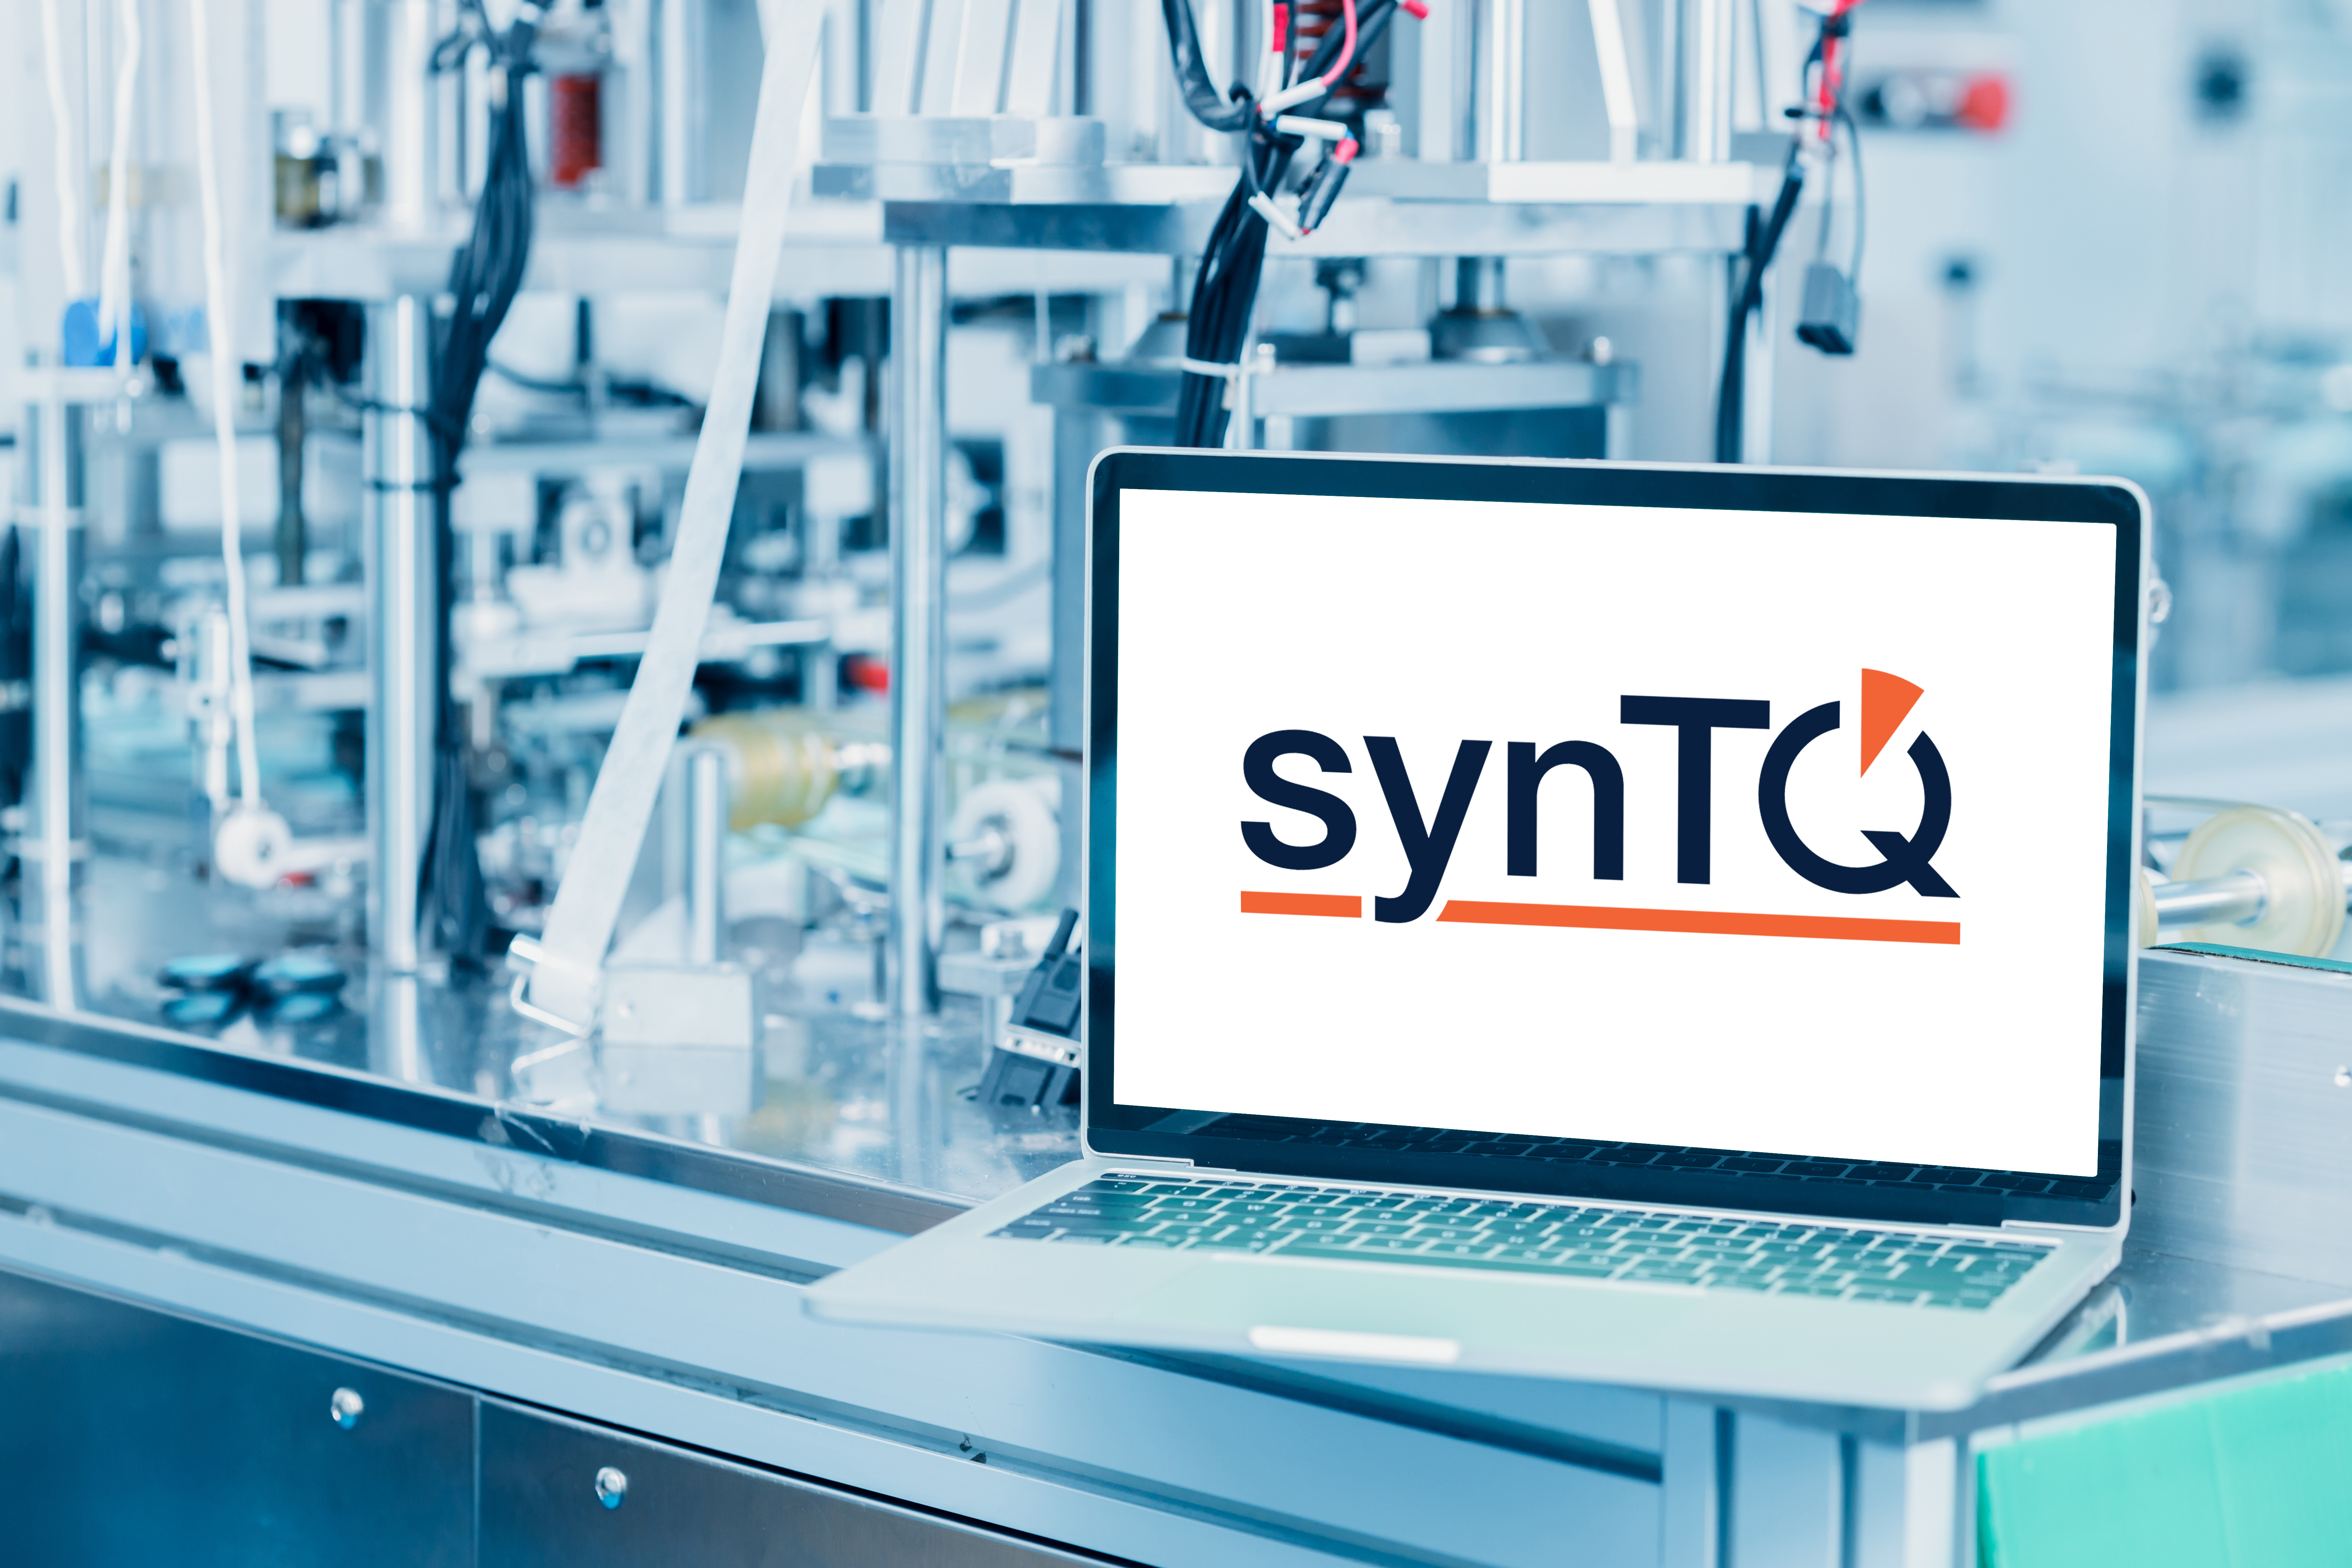 Automatisierte Laborsysteme mit I4.0-Software wie synTQ optimieren Produktqualität, Compliance und Effizienz in der Produktion.